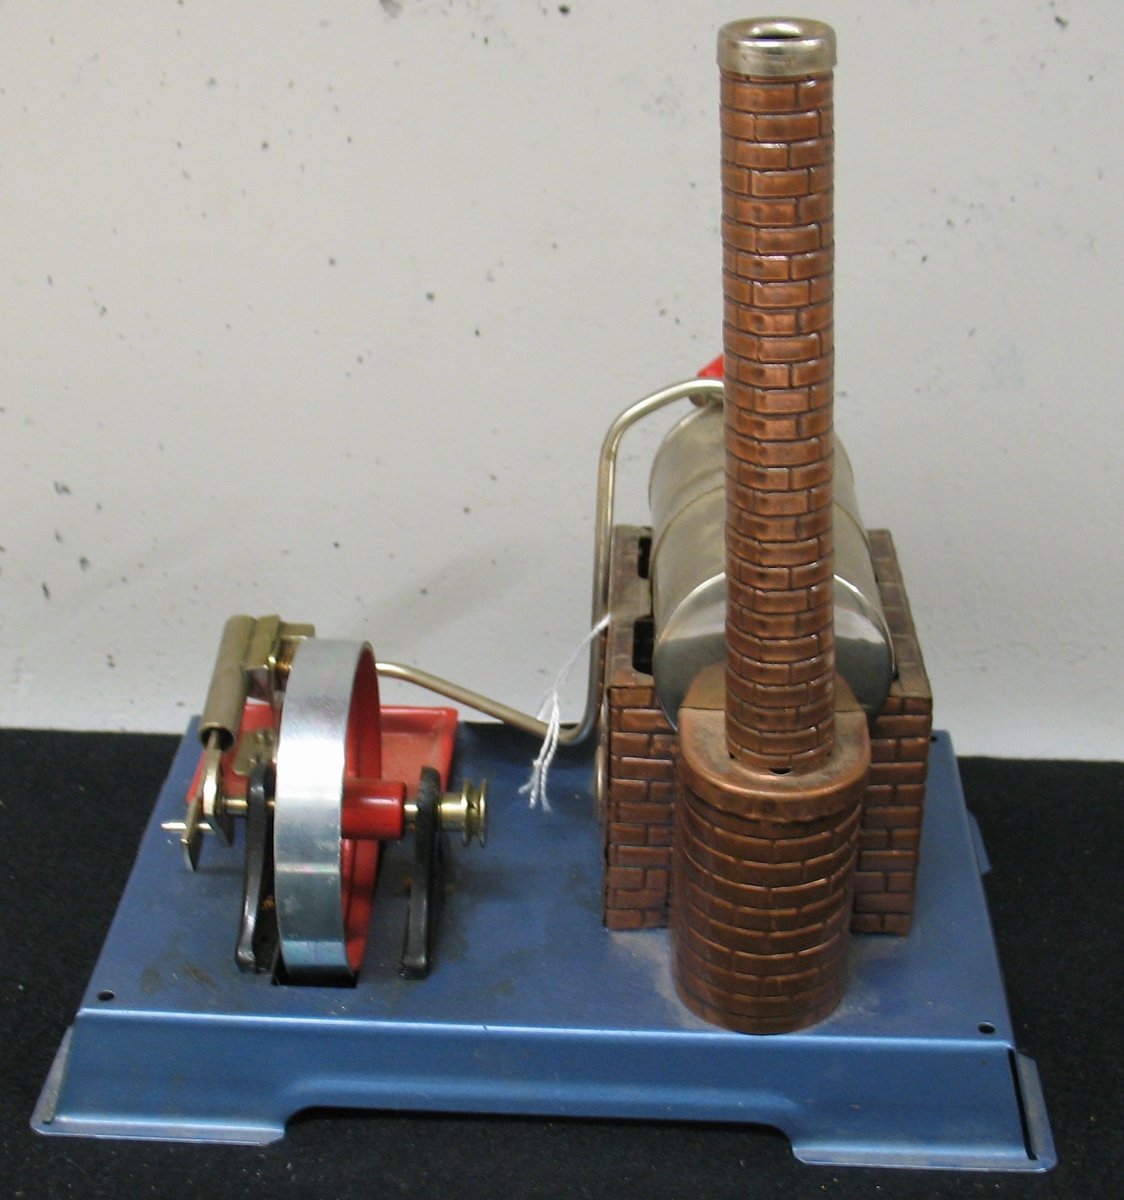 En av fyra  ångmaskiner, samtliga tillverkade på 1960-70-talen i Väst-Tyskland och tre med firmanamnet Wilesco. En av maskinerna förvaras ouppackad i originalkartong. Den minsta av maskinerna har avslagen skorsten och bucklad tank. Mått: L. 34,5 - 21,5 cm.  H. 31 - 21 cm.  B. 29 - 13,5 cm.Å